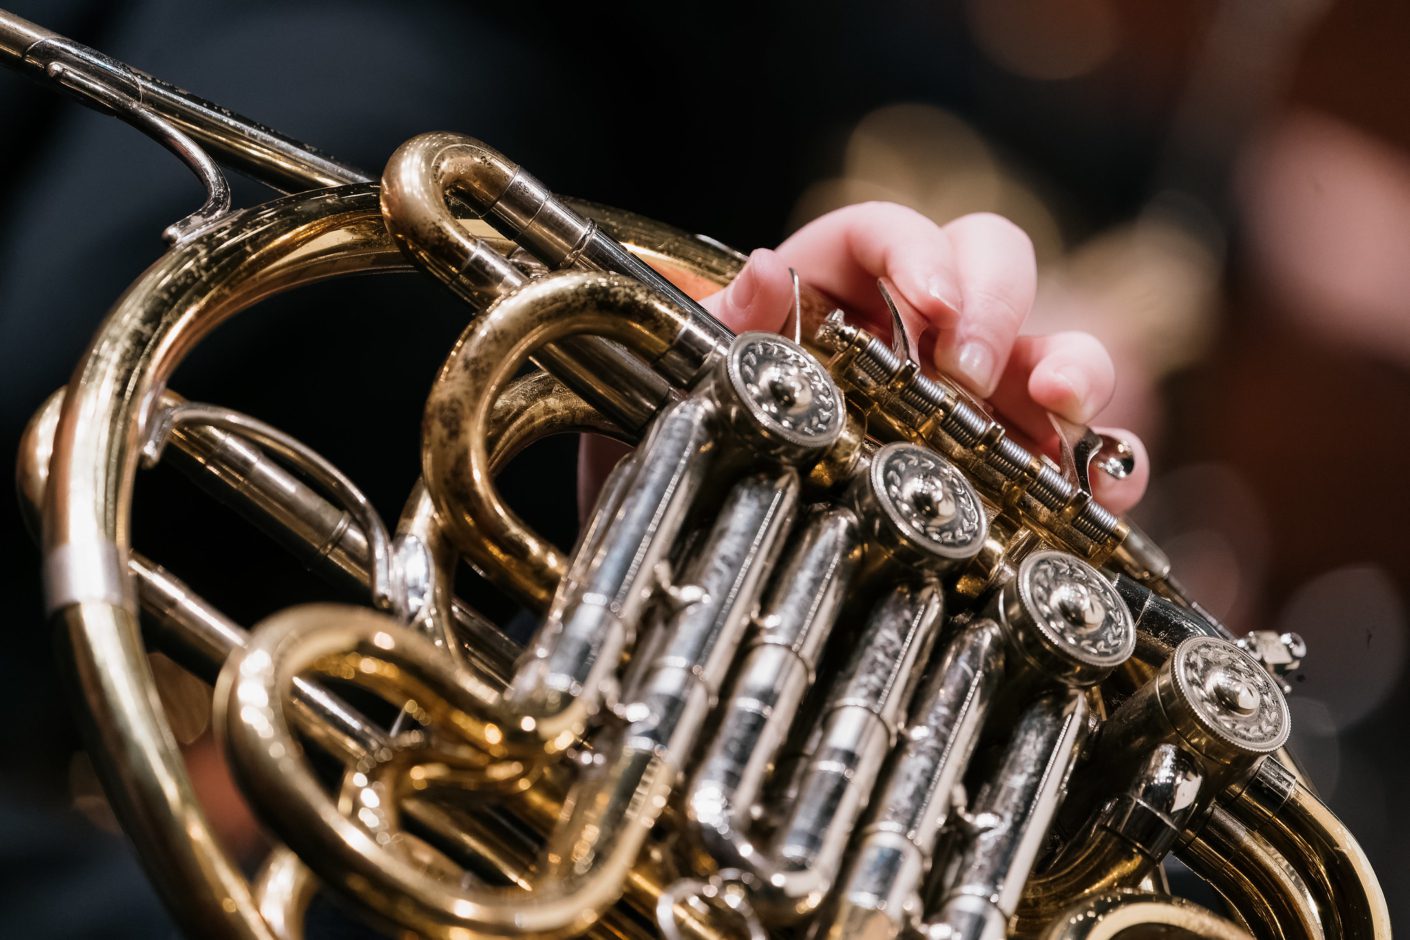 MUSIQUE ROYALE Cookie Concerts present Maritime Brass Quintet